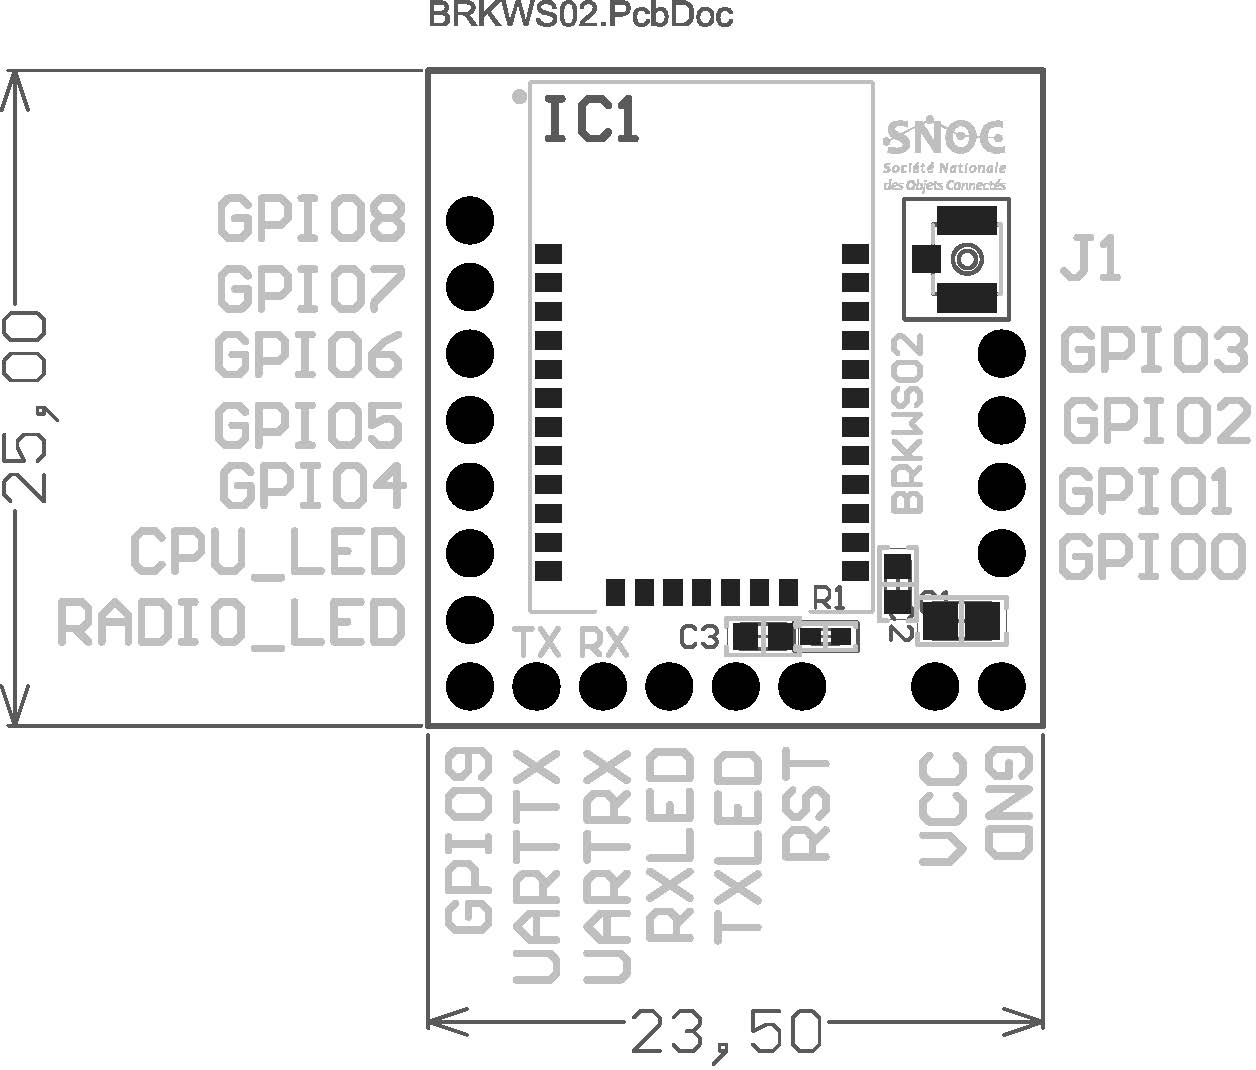 BRKWS02 RC4 PCB